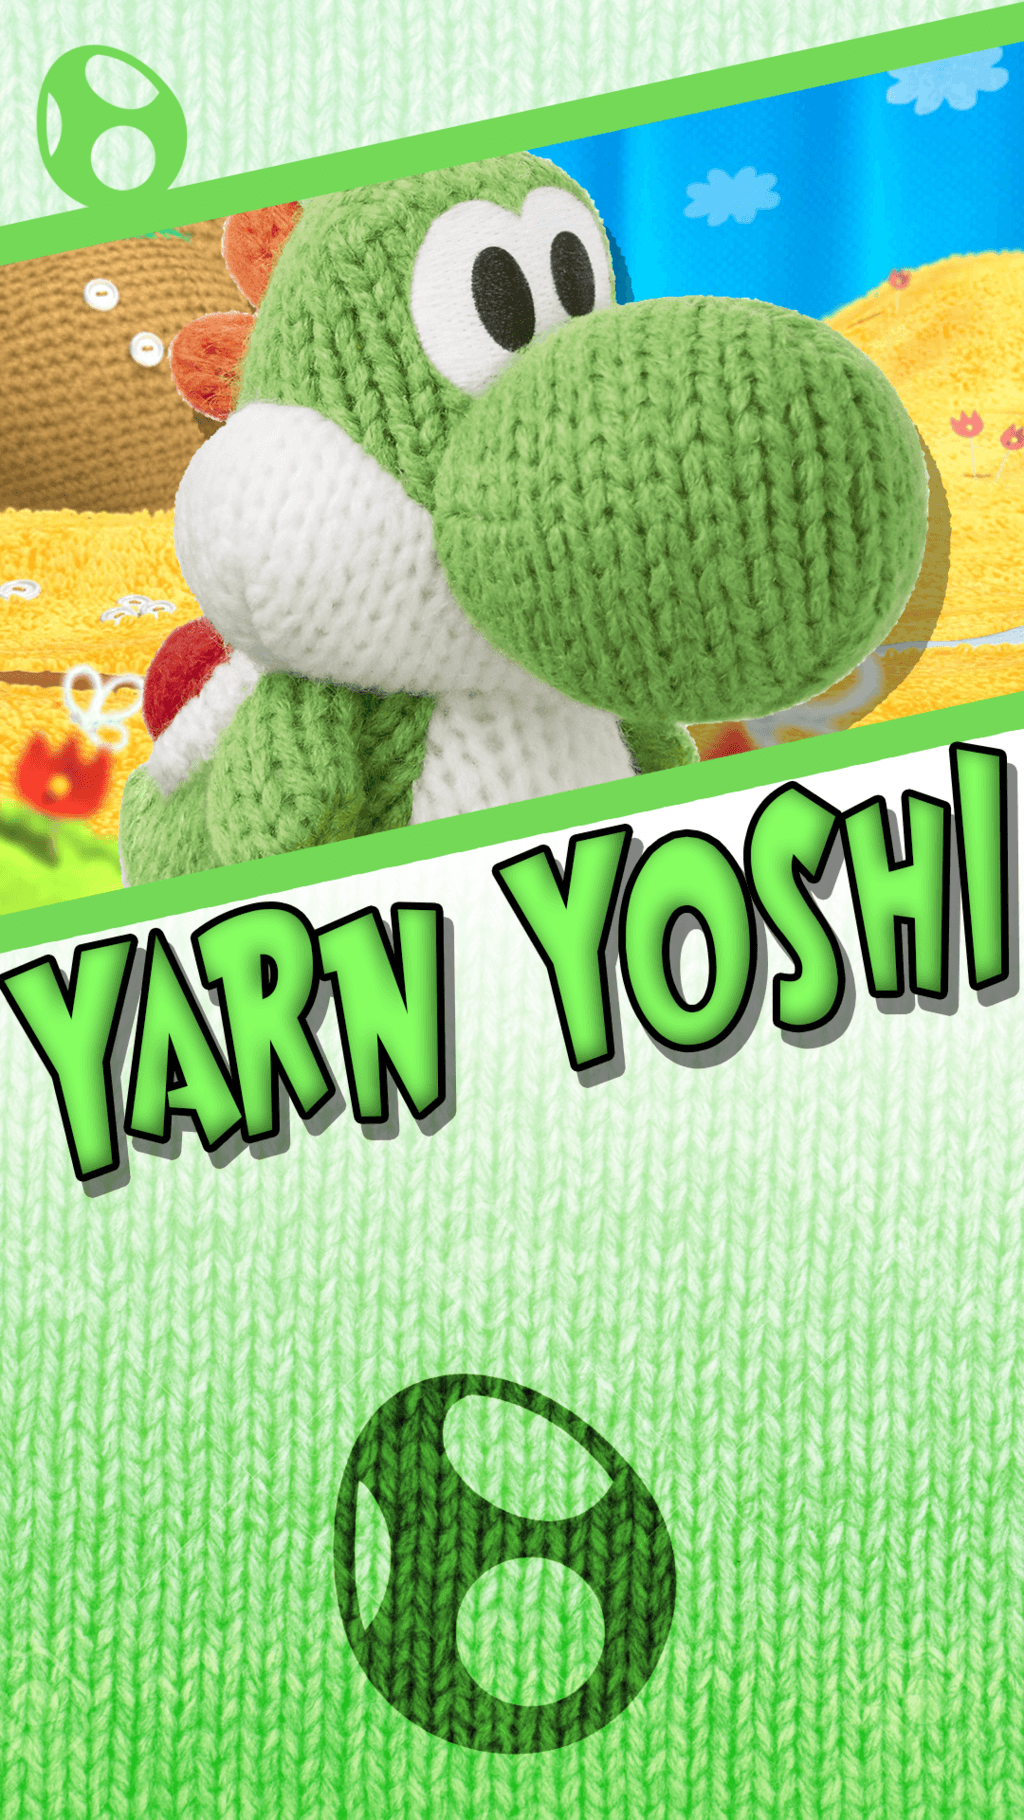 Yarn Yoshi Woolly World Phone Wallpaper